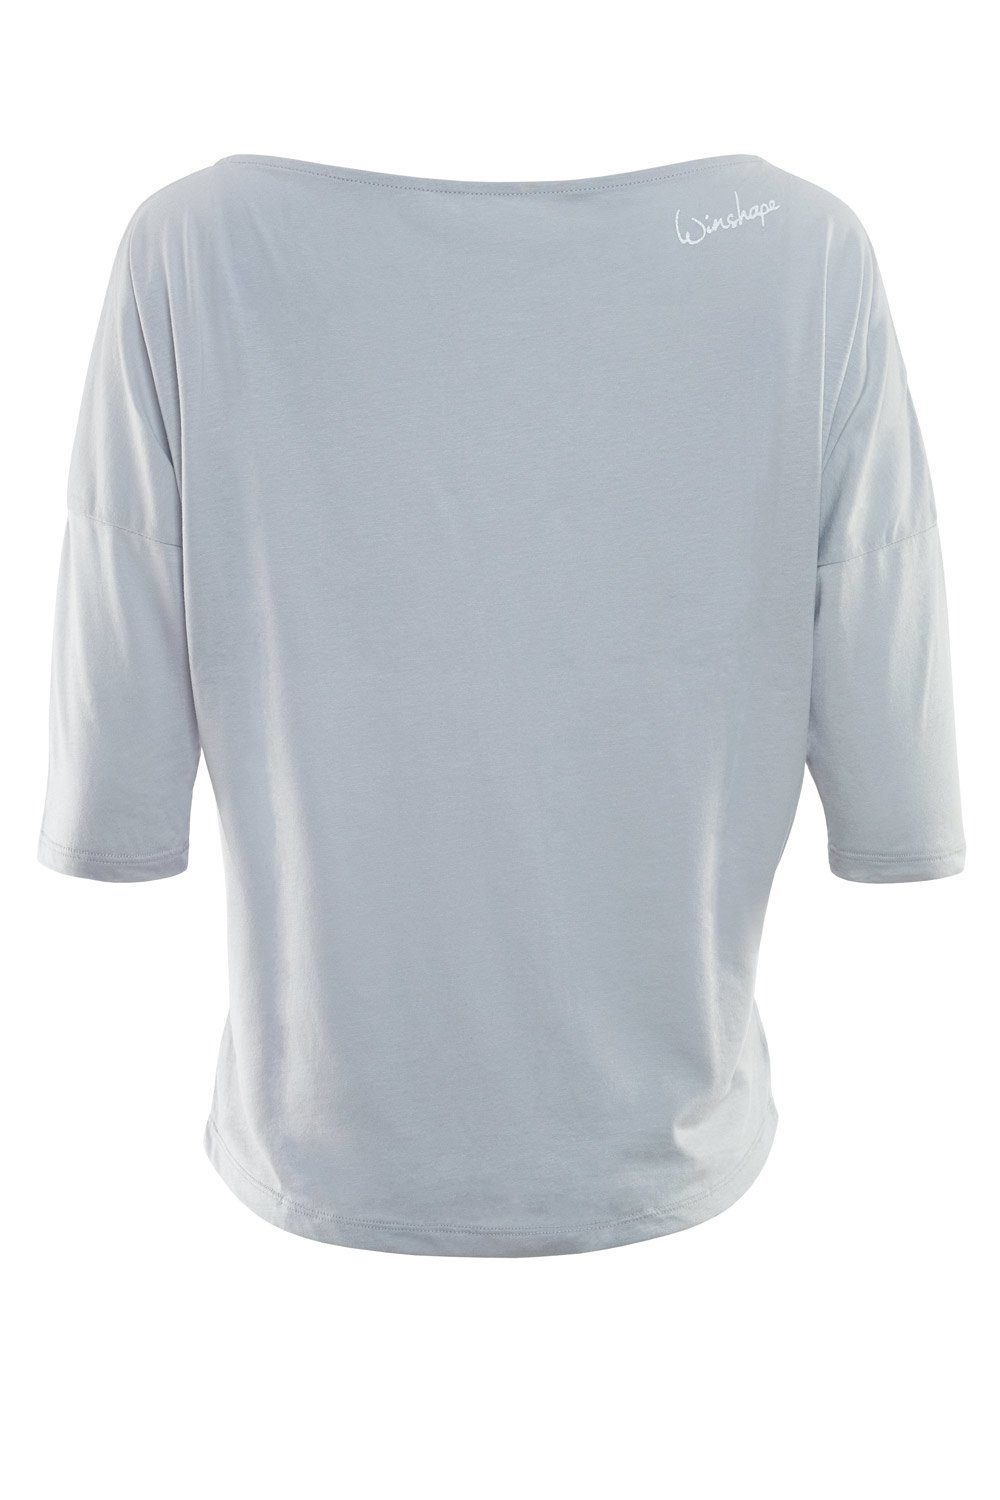 Winshape leicht mit grey weißem cool weiß - glitzer Glitzer-Aufdruck MCS001 3/4-Arm-Shirt ultra